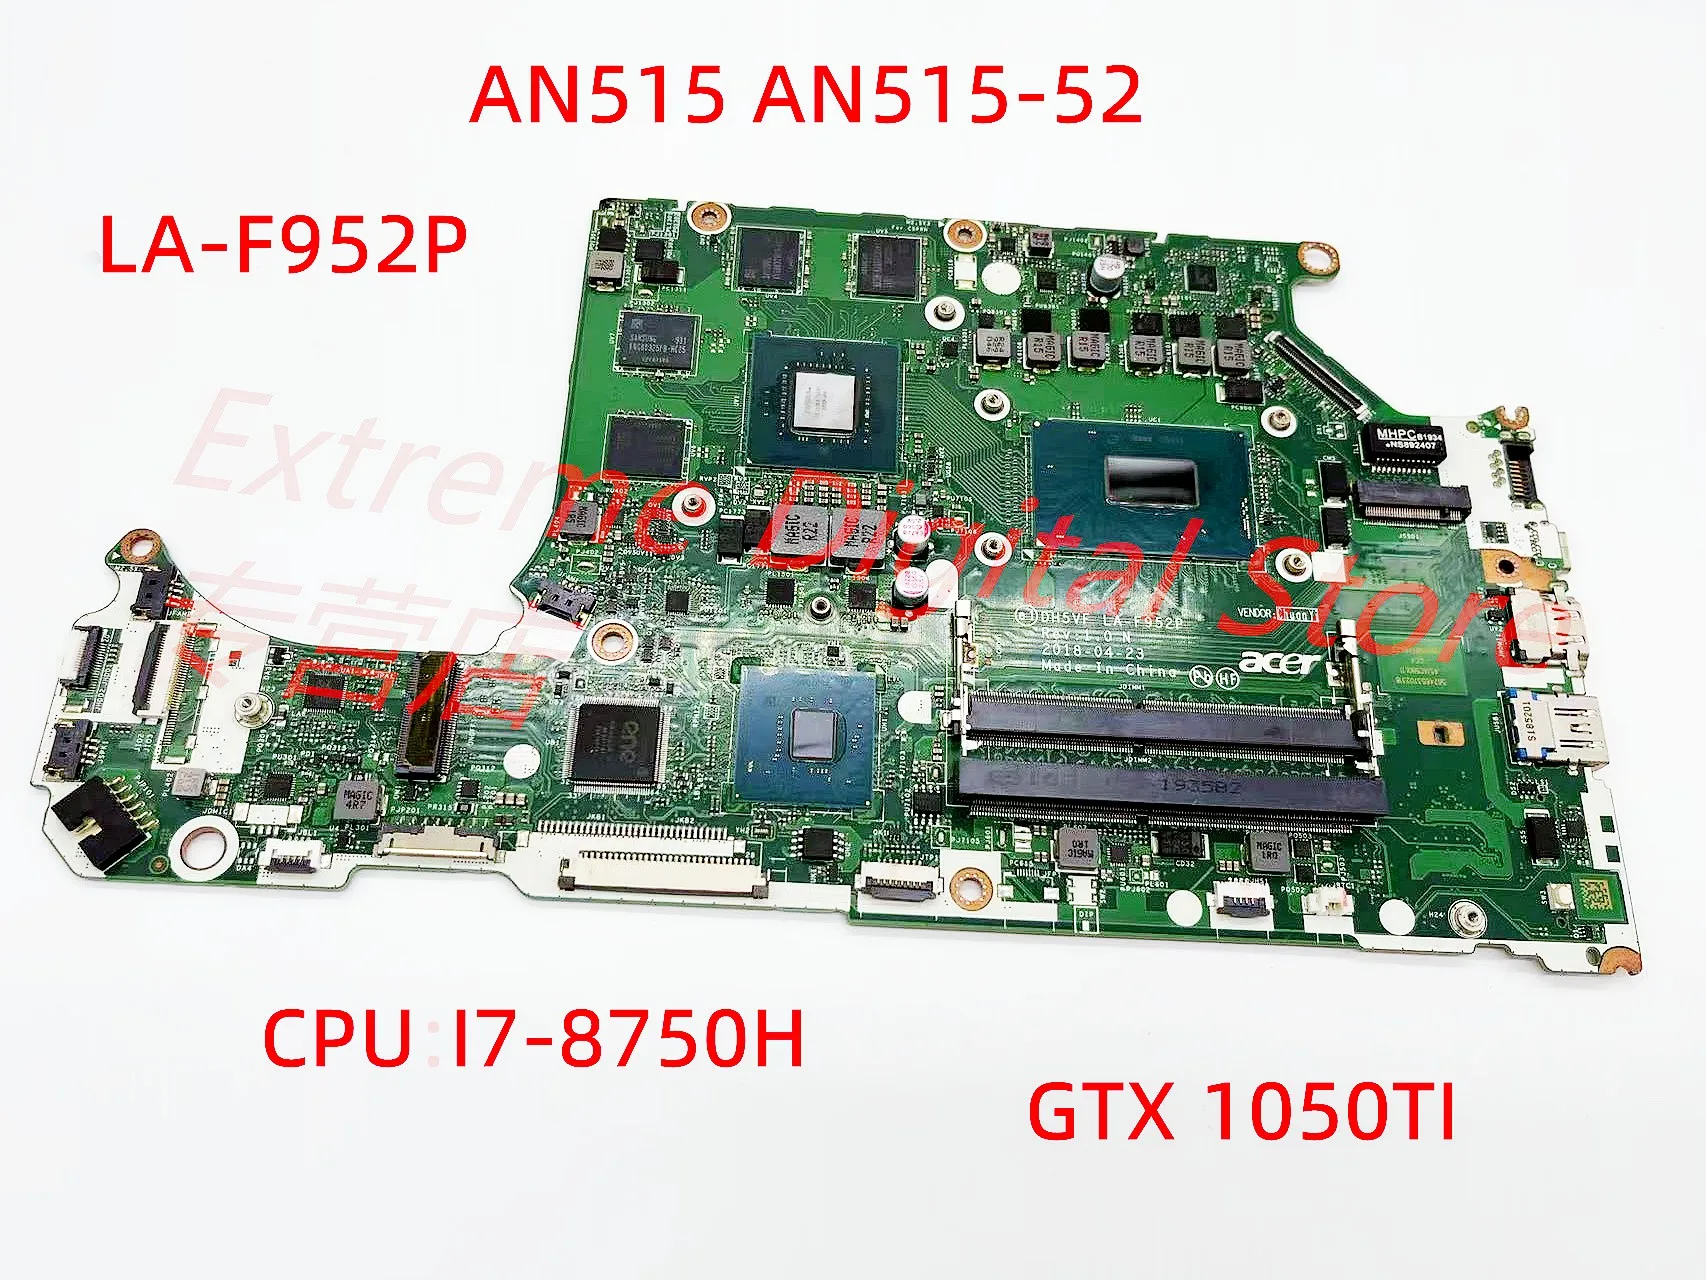 עבור ACER AN515-52 AN515 מחברת האם DH5VF לה-F952P מעבד i7-8750H GPU GTX1050TI DDR4 RAM 100% נבדקו באופן מלא